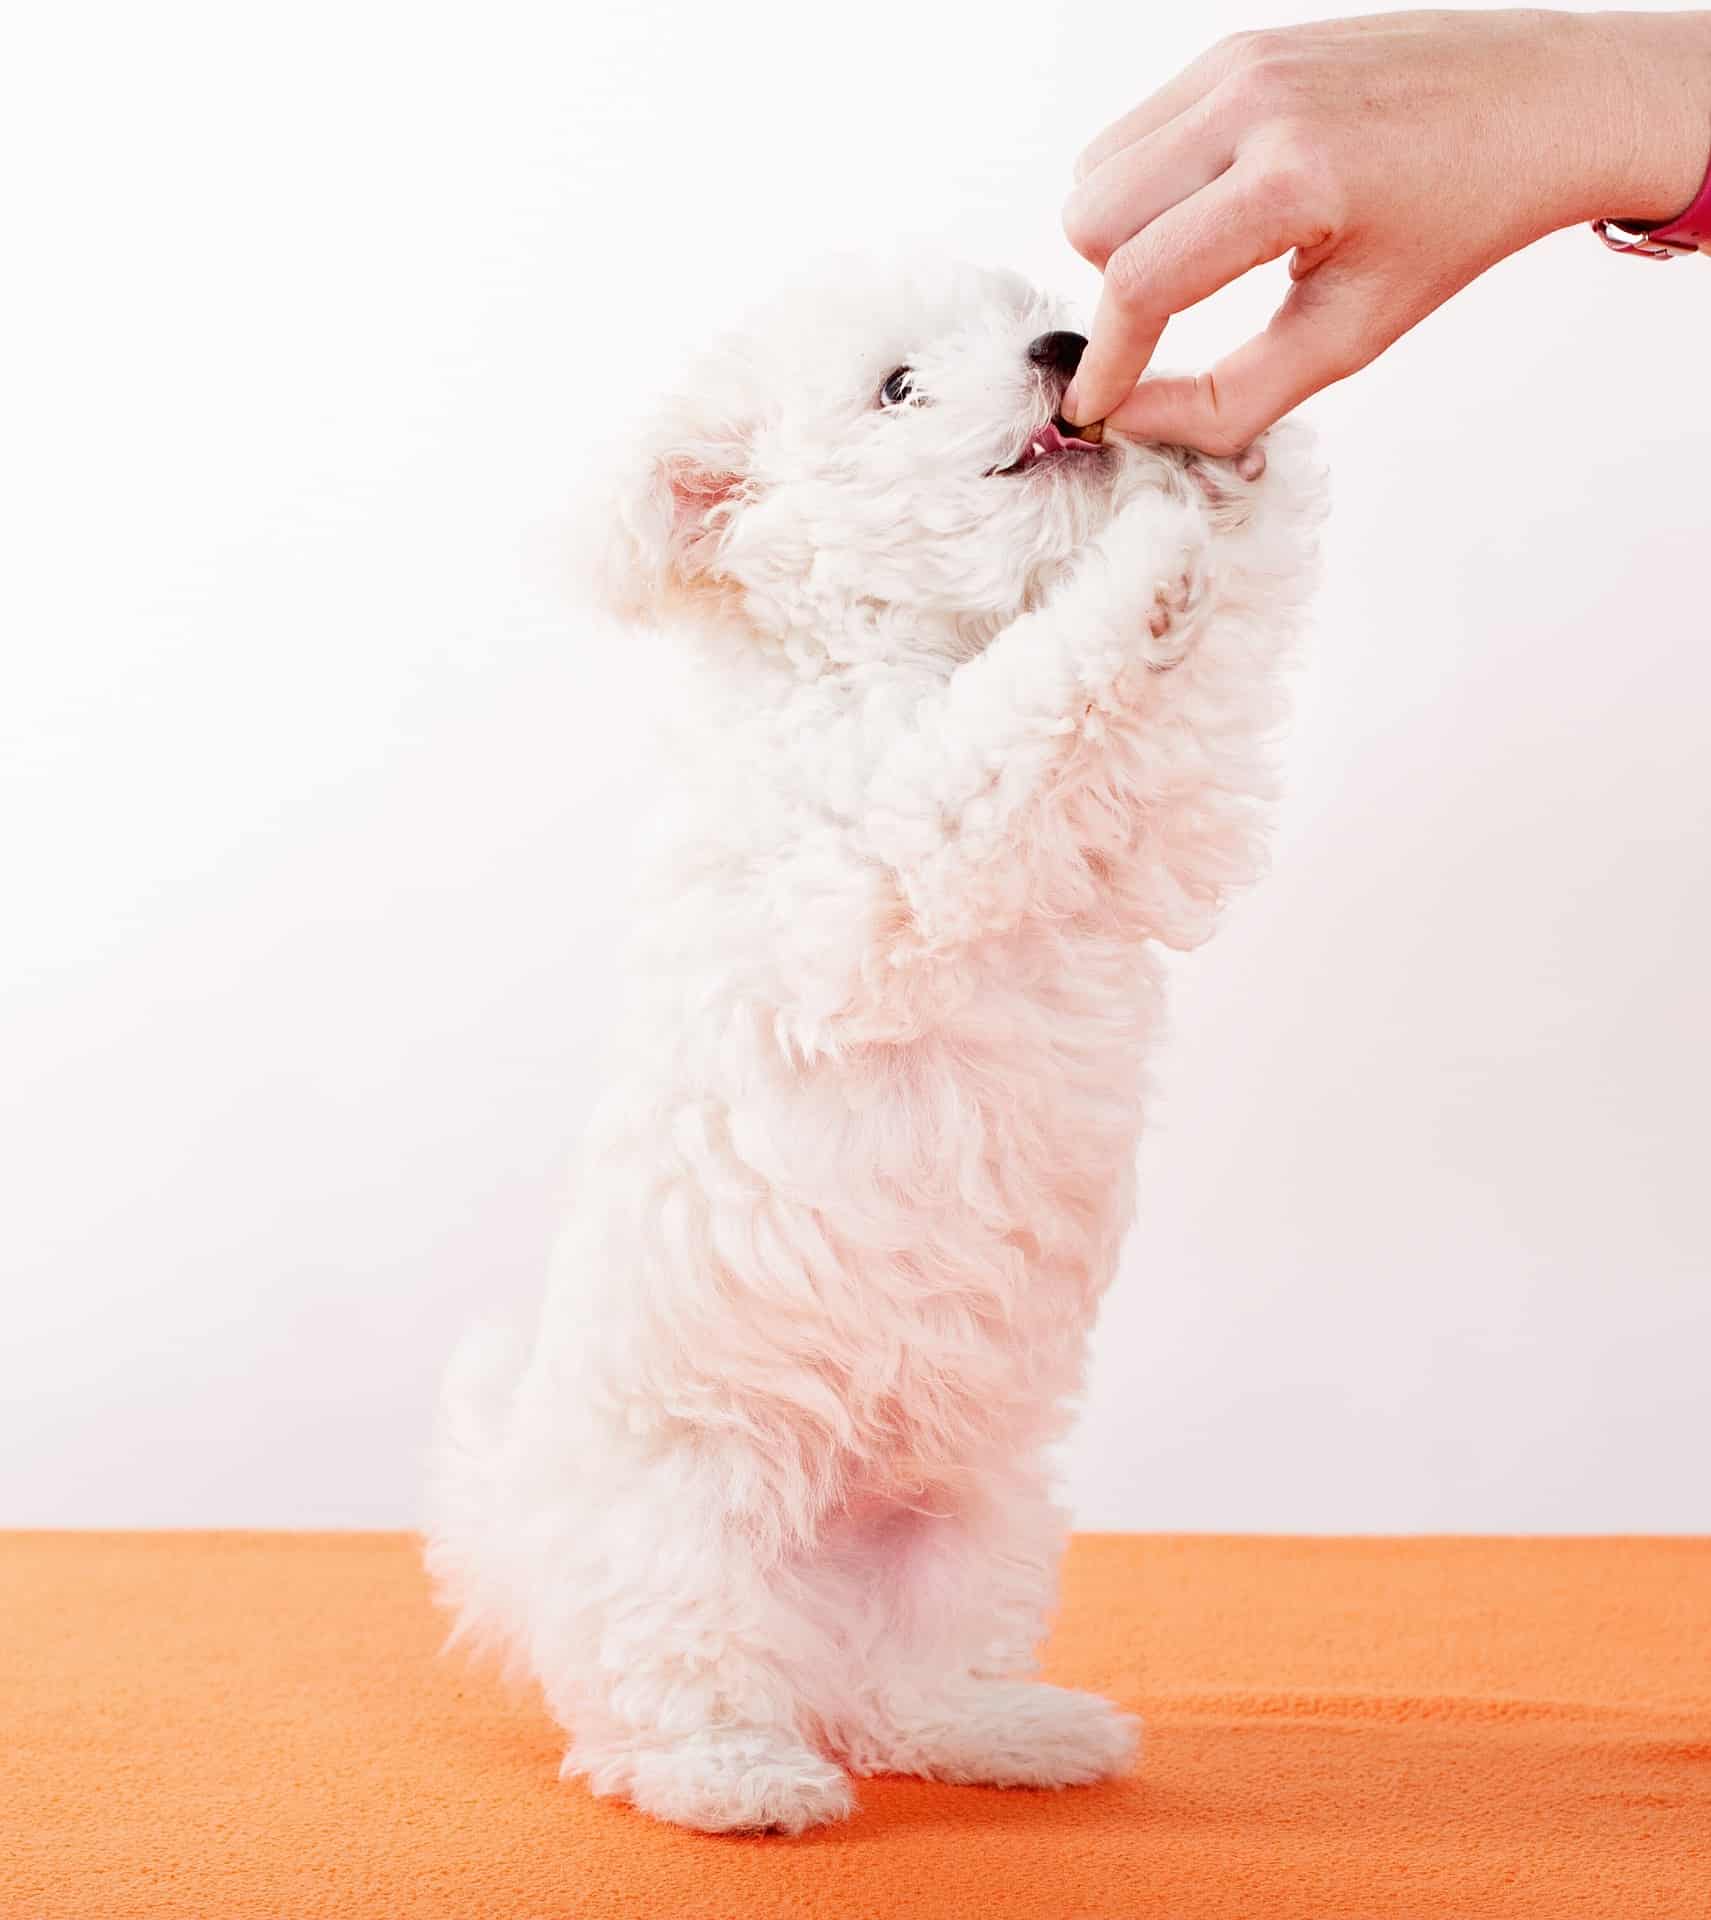 Cute puppy being fed